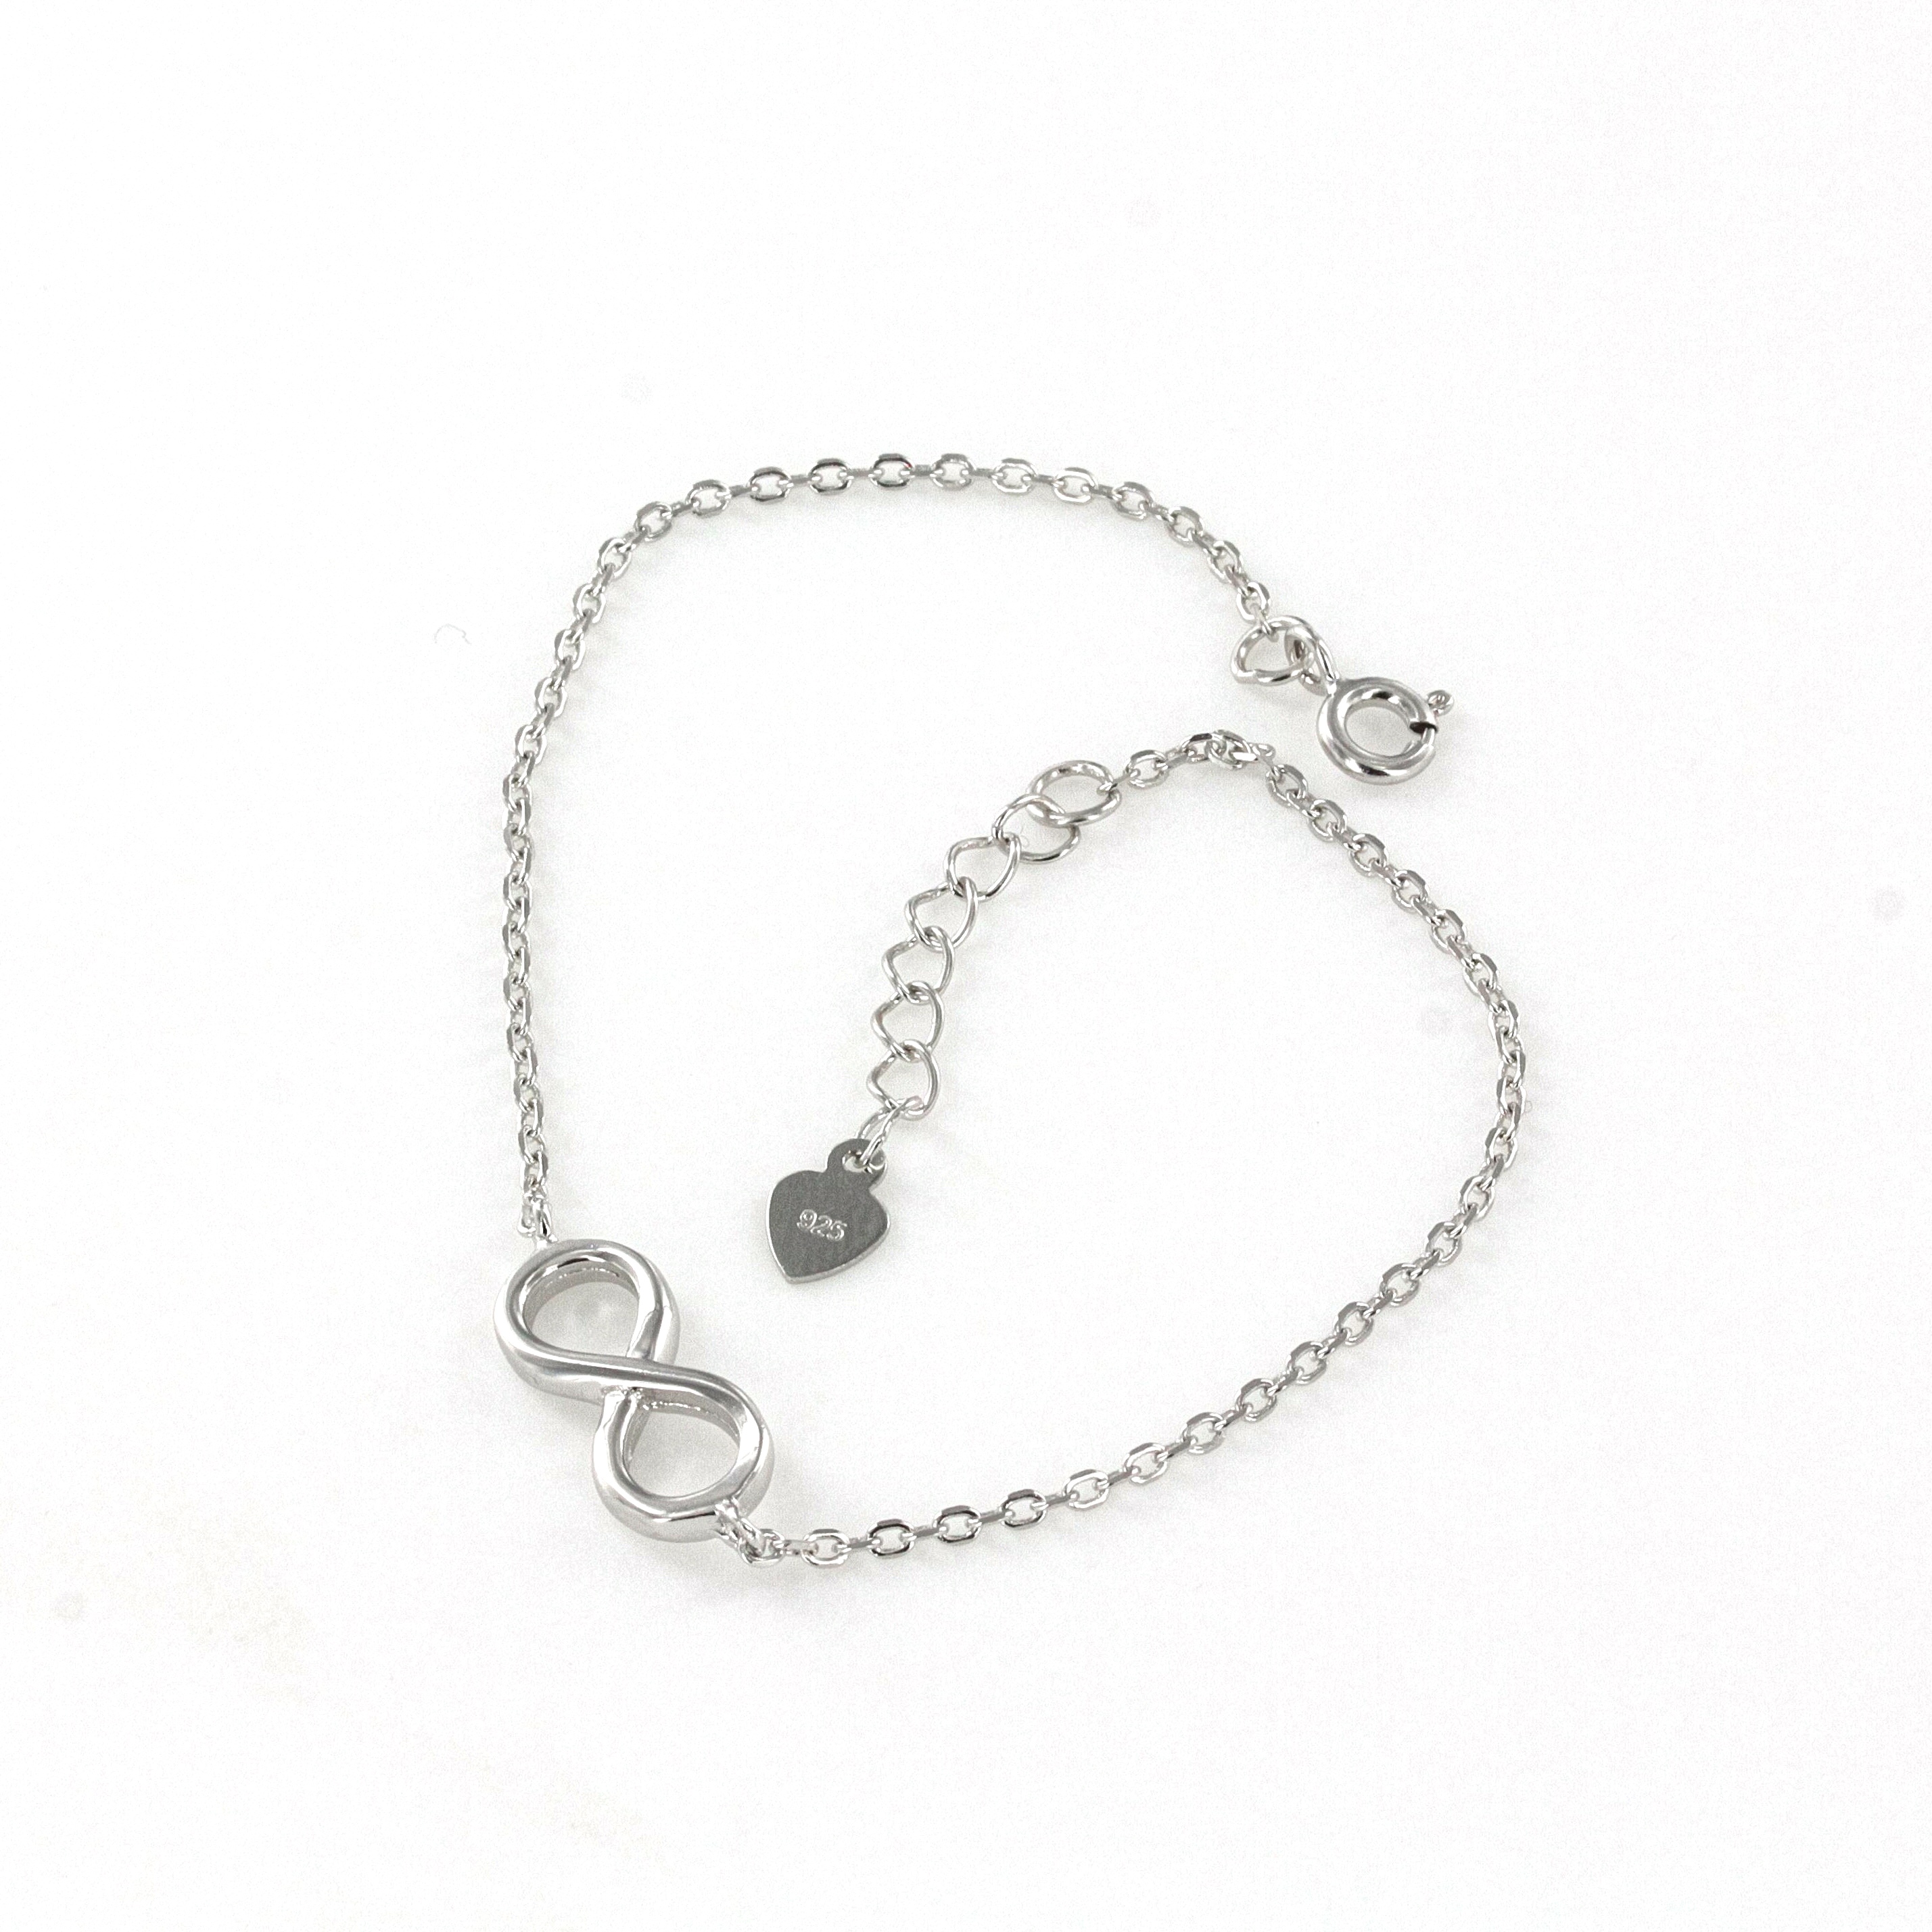 Infinity bracelet in Sterling Silver